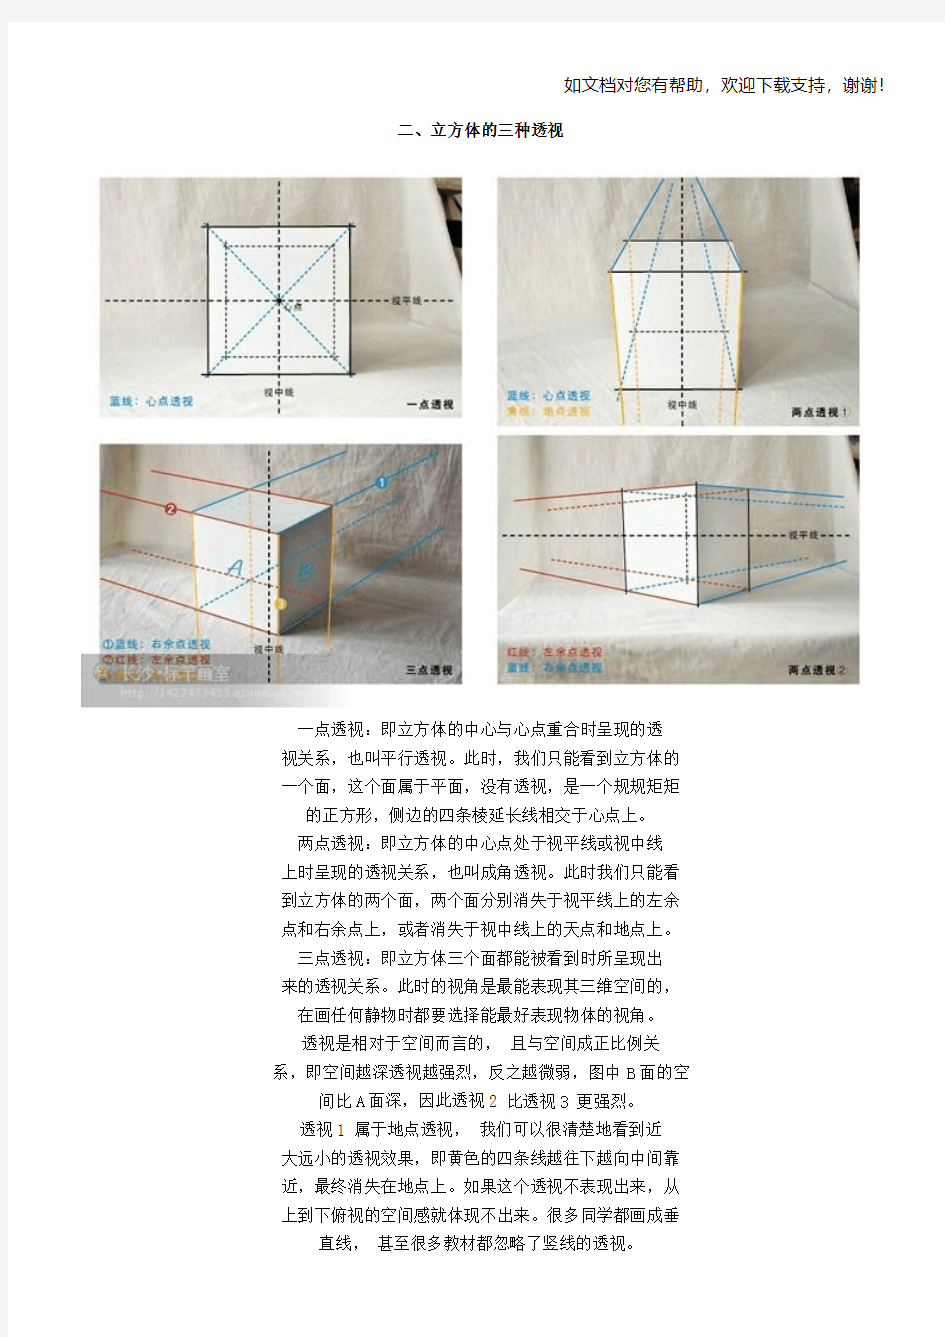 素描画酸奶盒(方体静物)方法、技法、理论知识(超经典)